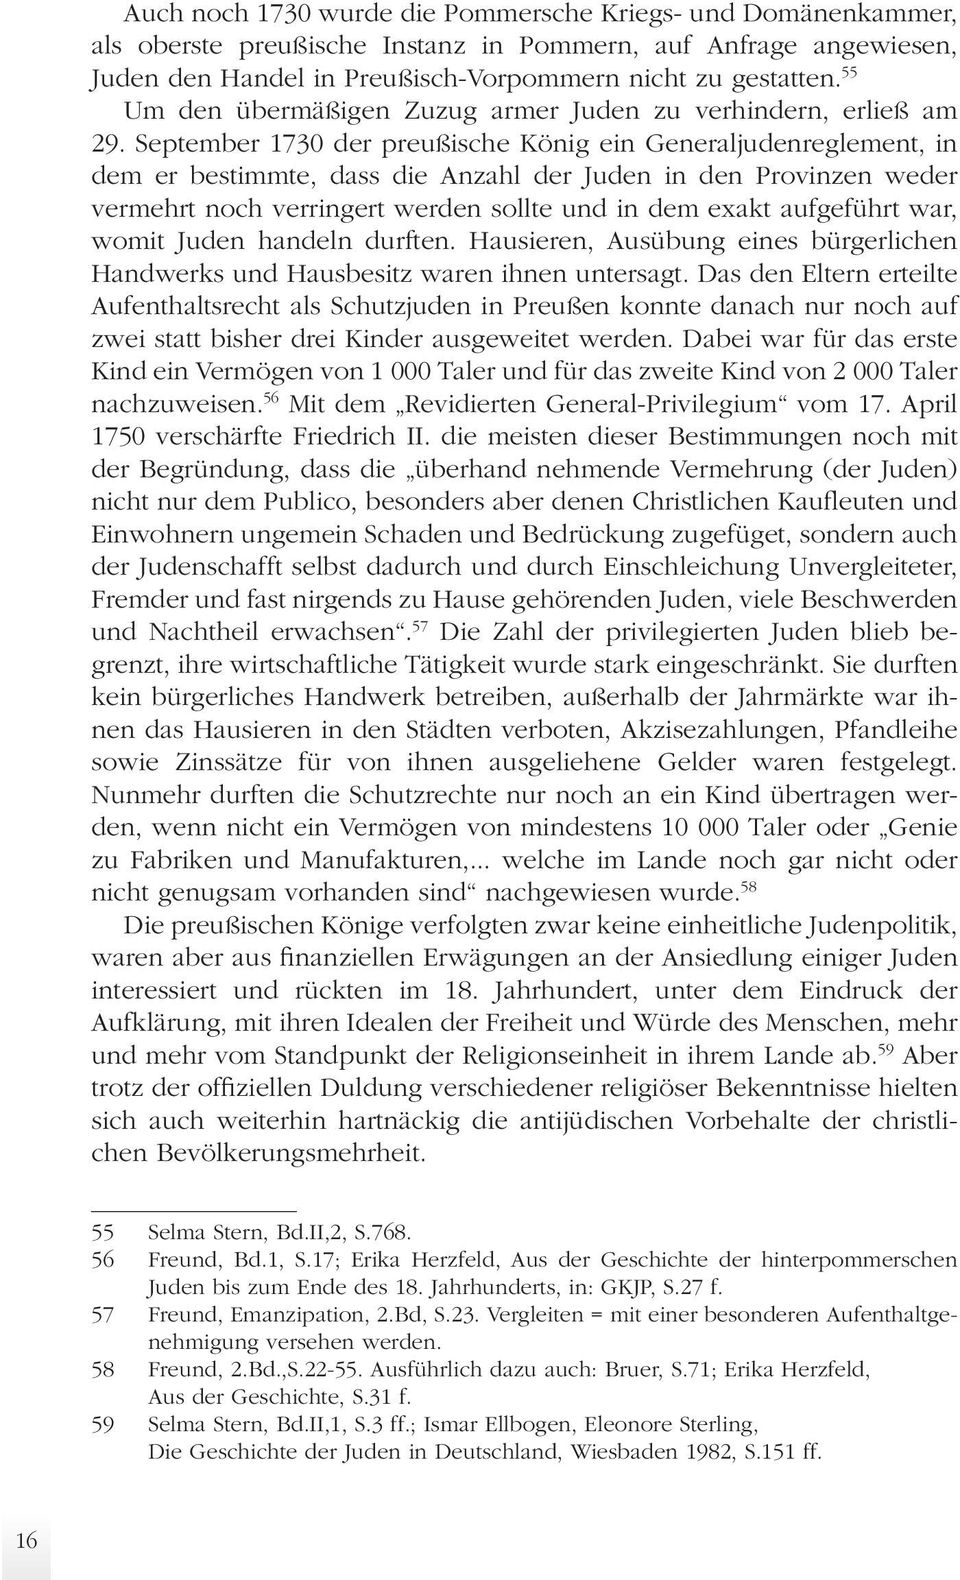 September 1730 der preußische König ein Generaljudenreglement, in dem er bestimmte, dass die Anzahl der Juden in den Provinzen weder vermehrt noch verringert werden sollte und in dem exakt aufgeführt